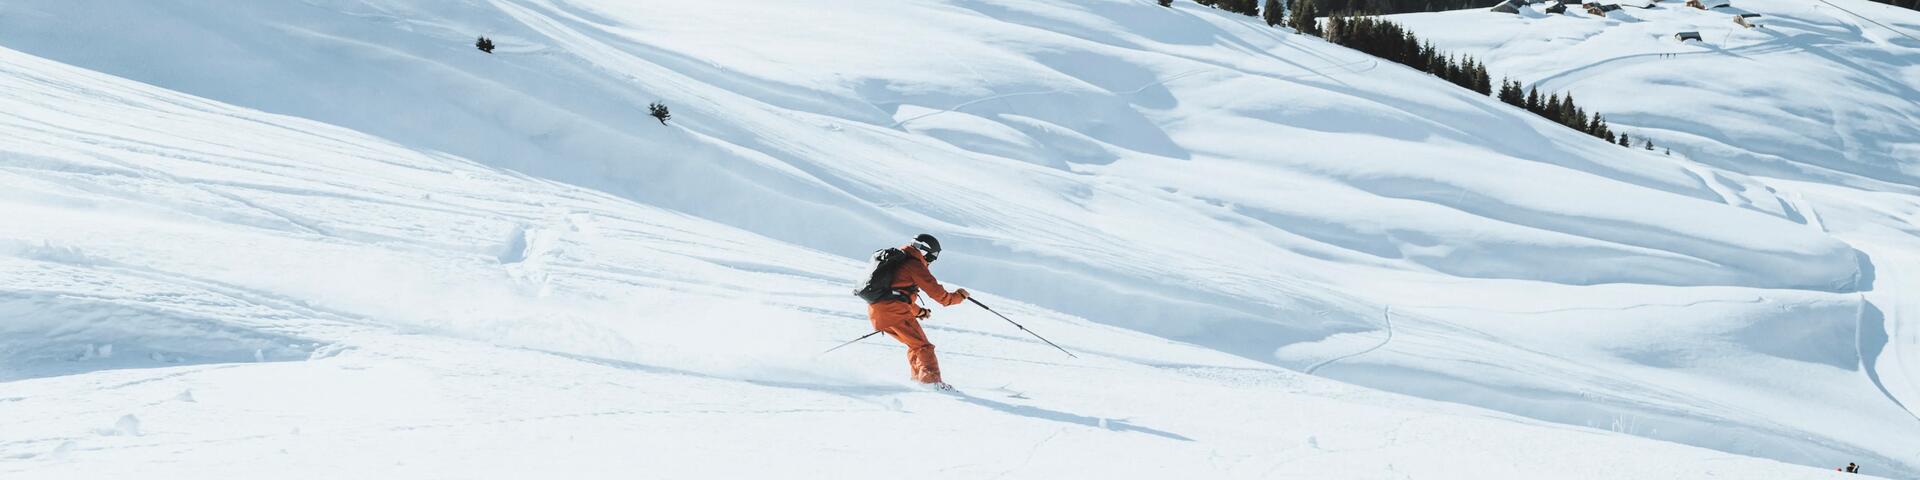 Jak jeździć na nartach? Poradnik dla początkujących